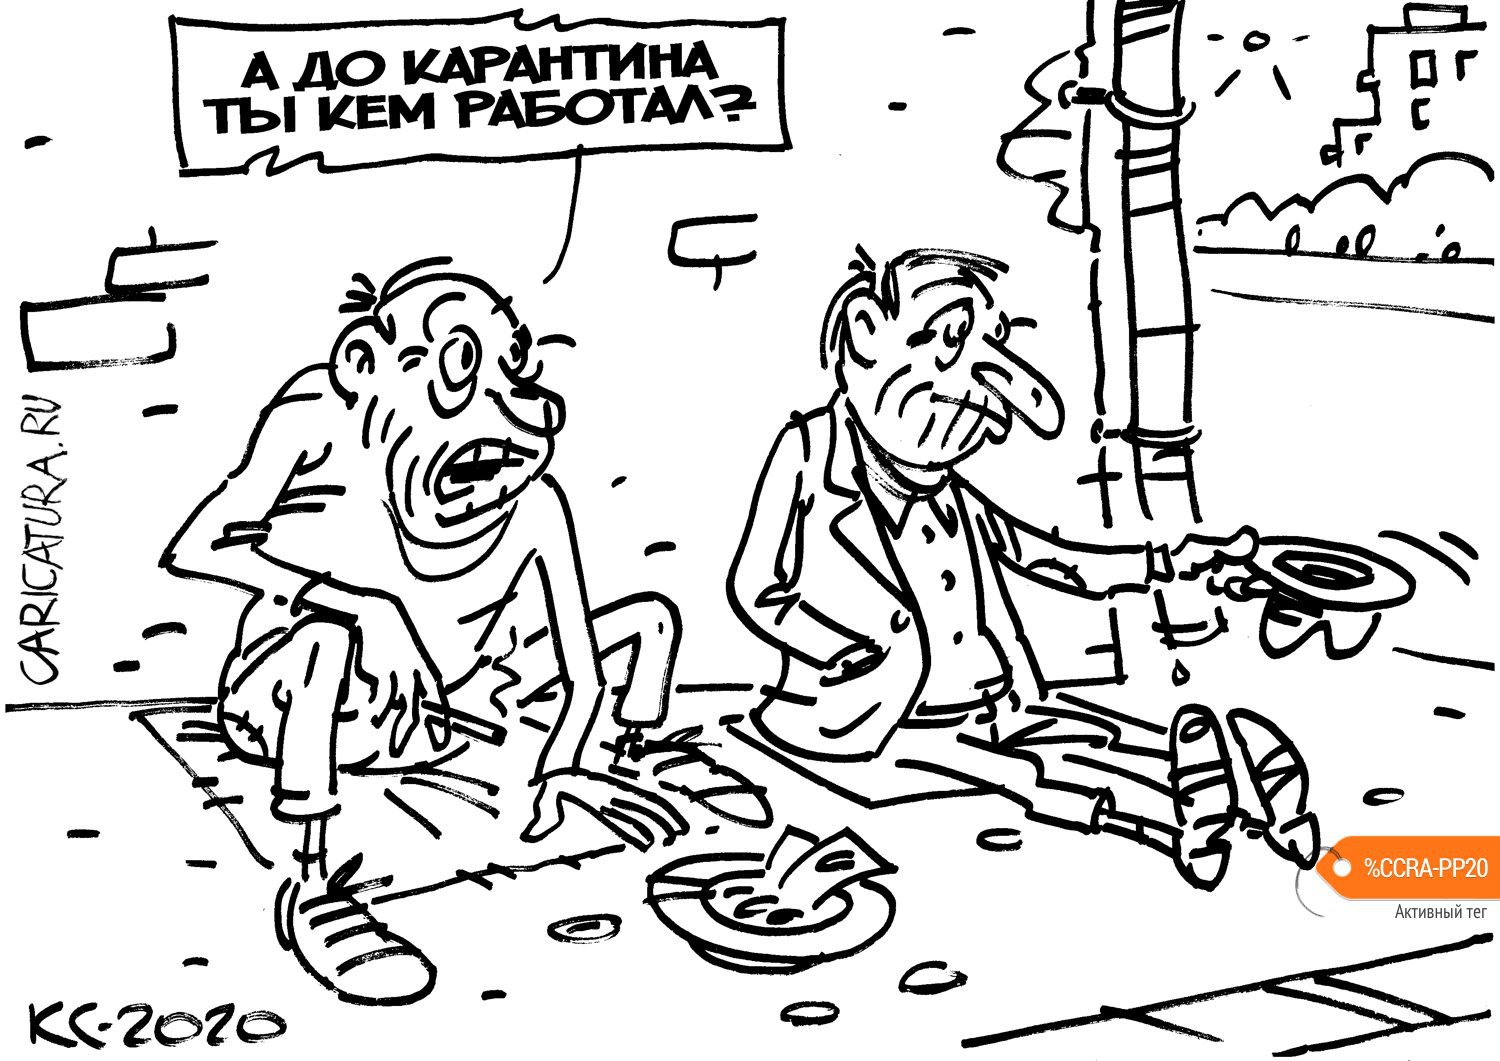 Карикатура "Посткарантинное", Вячеслав Капрельянц